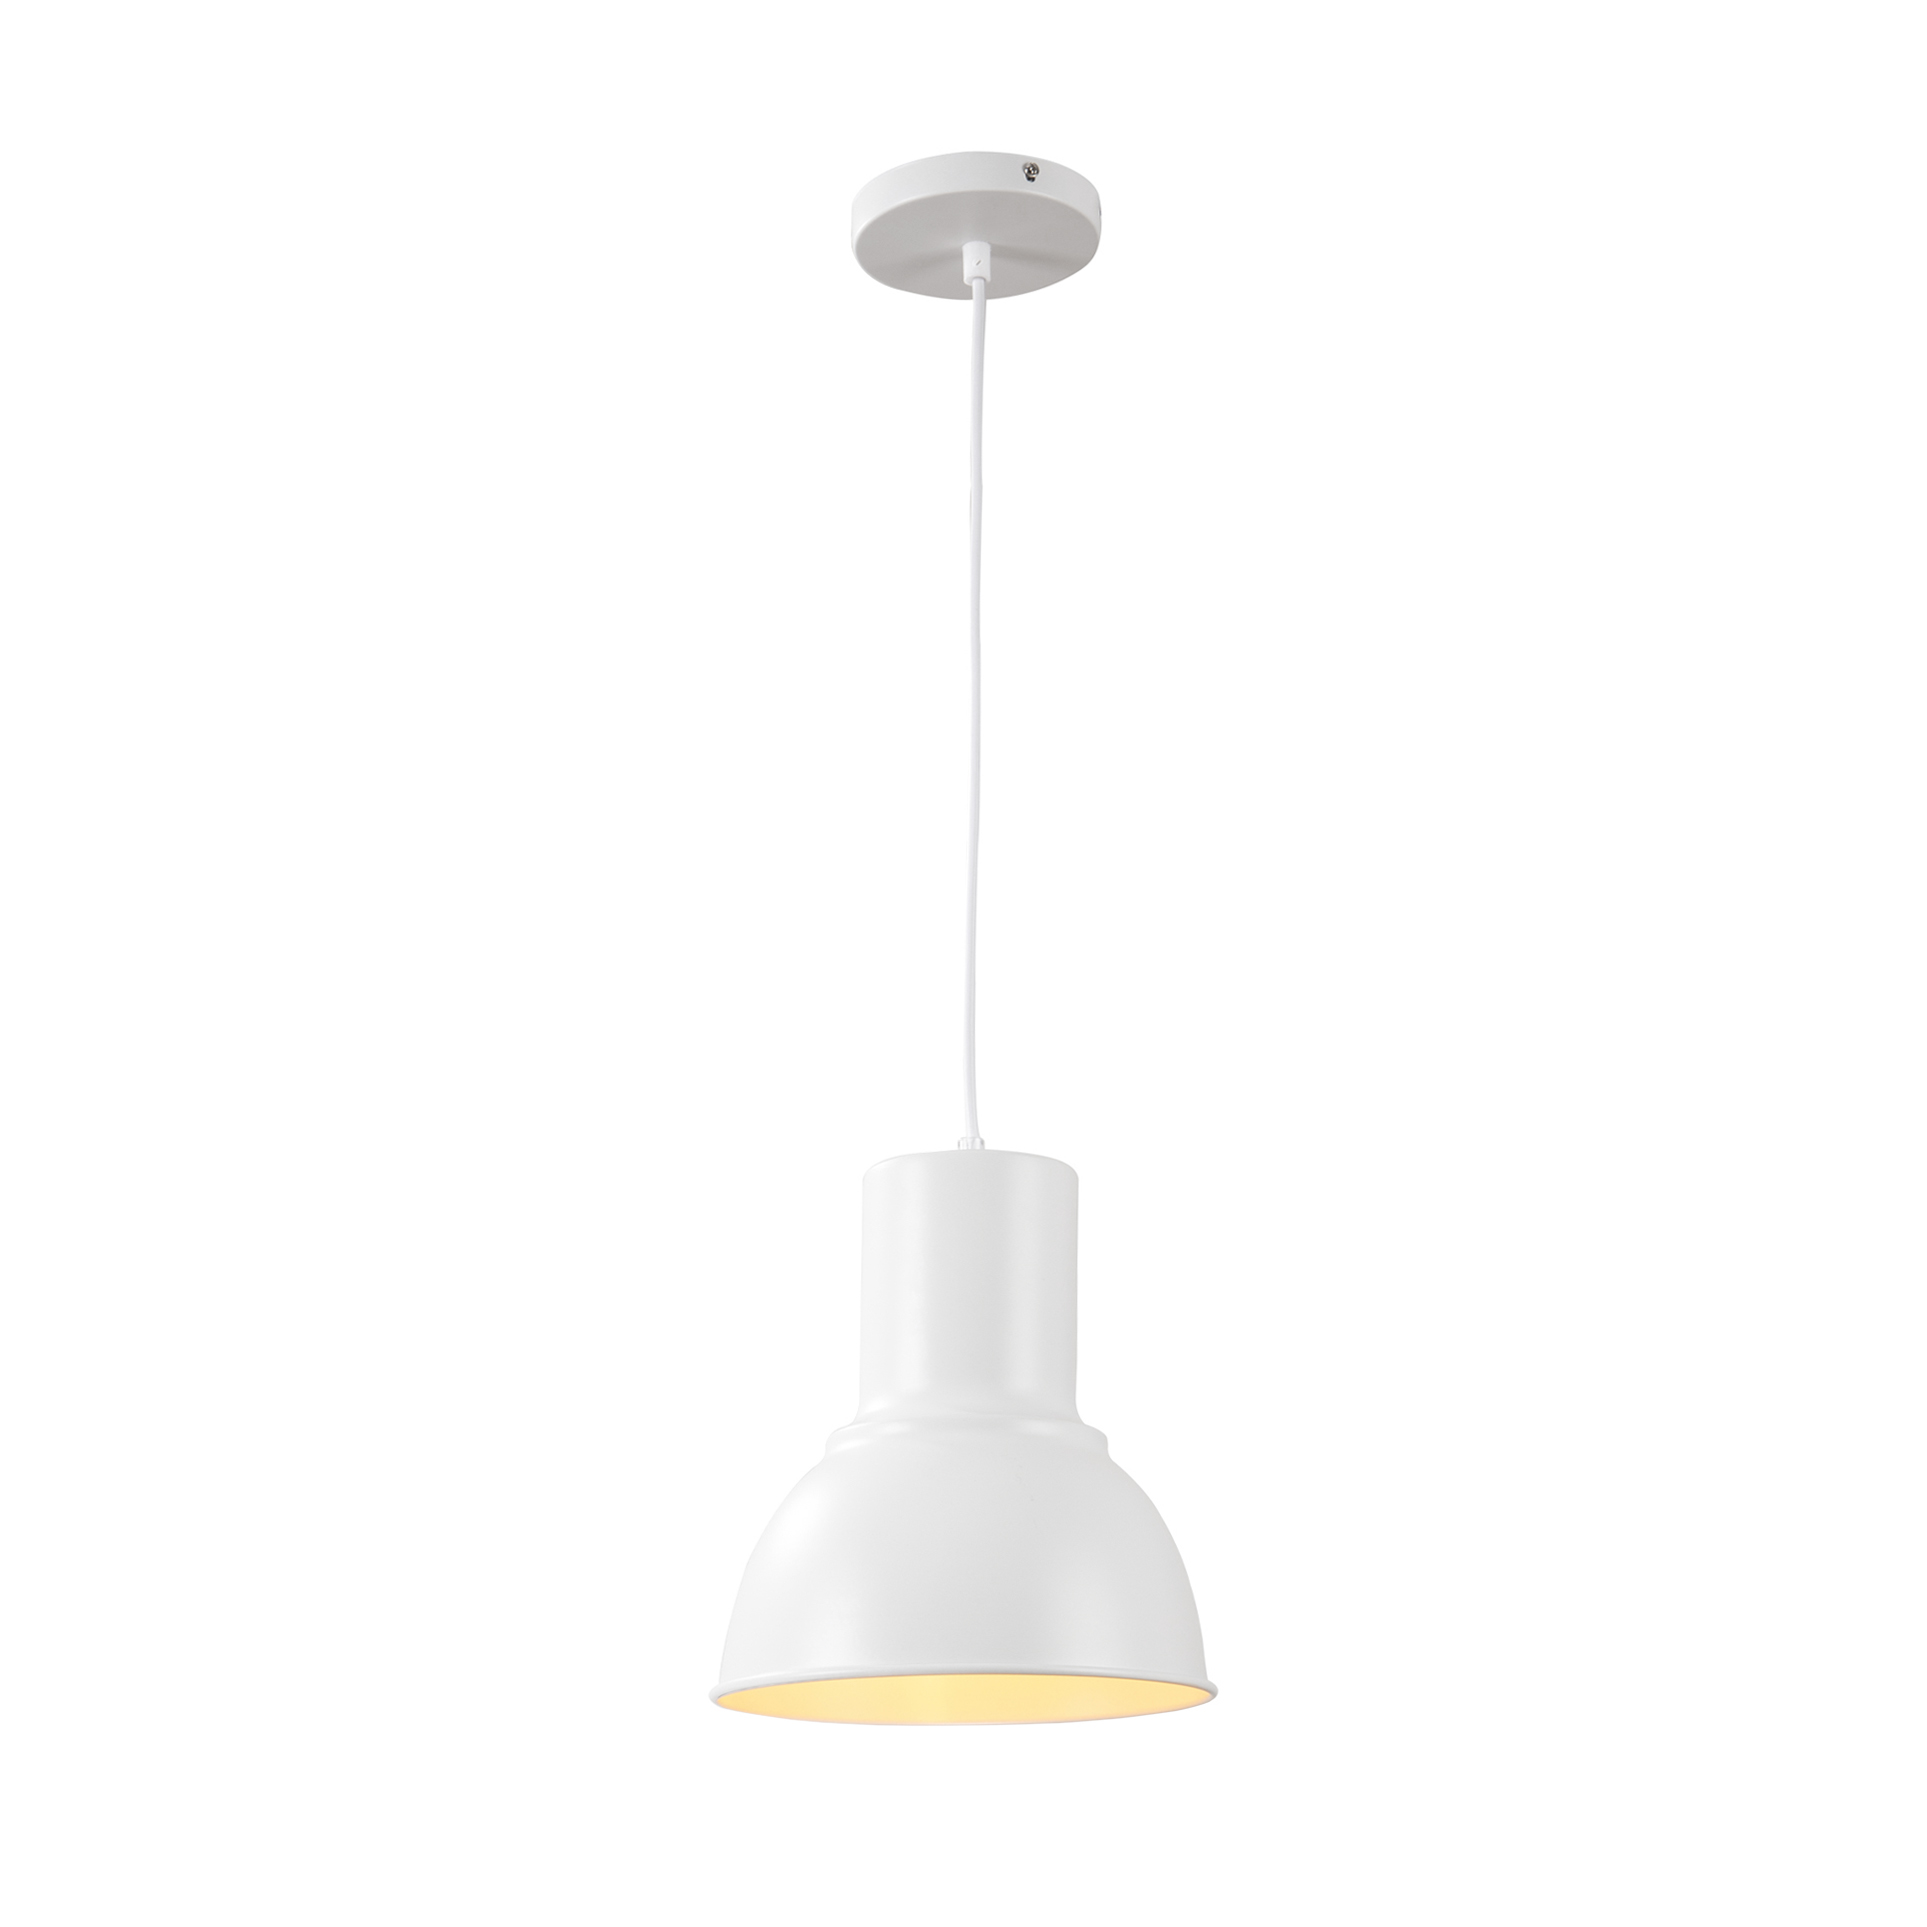 QUVIO Hanglamp retro - Rond design - Diameter 23 cm - Wit